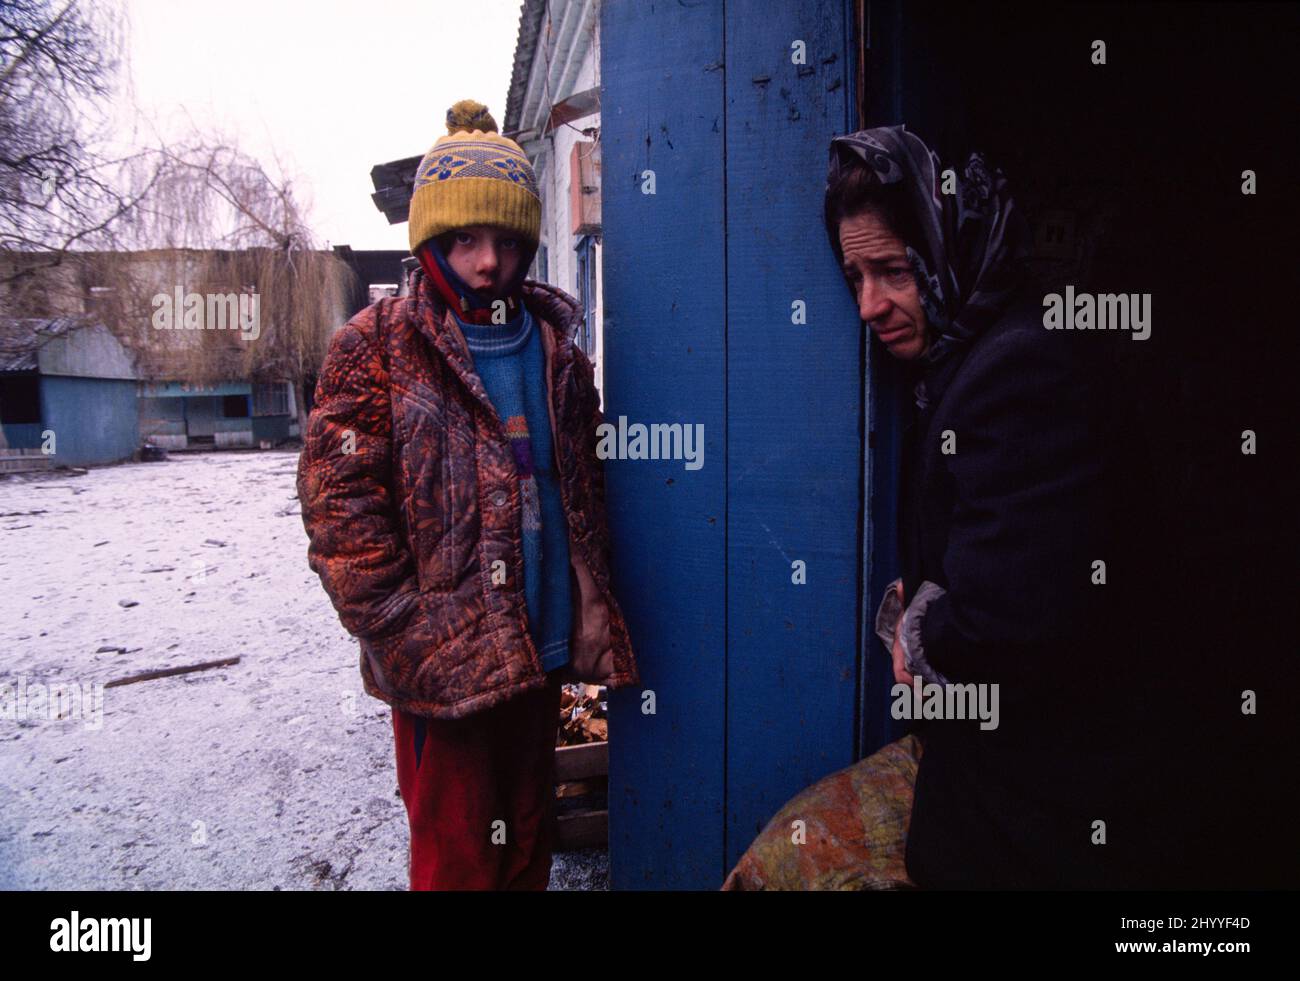 Prima guerra d'indipendenza cecena dalla Russia (1994-1995). Madre cecena e figlia di otto anni alla porta del seminterrato di una scuola bombardata a sud di Grozny, la capitale della Repubblica cecena. 28 dic. 1994. Foto Stock